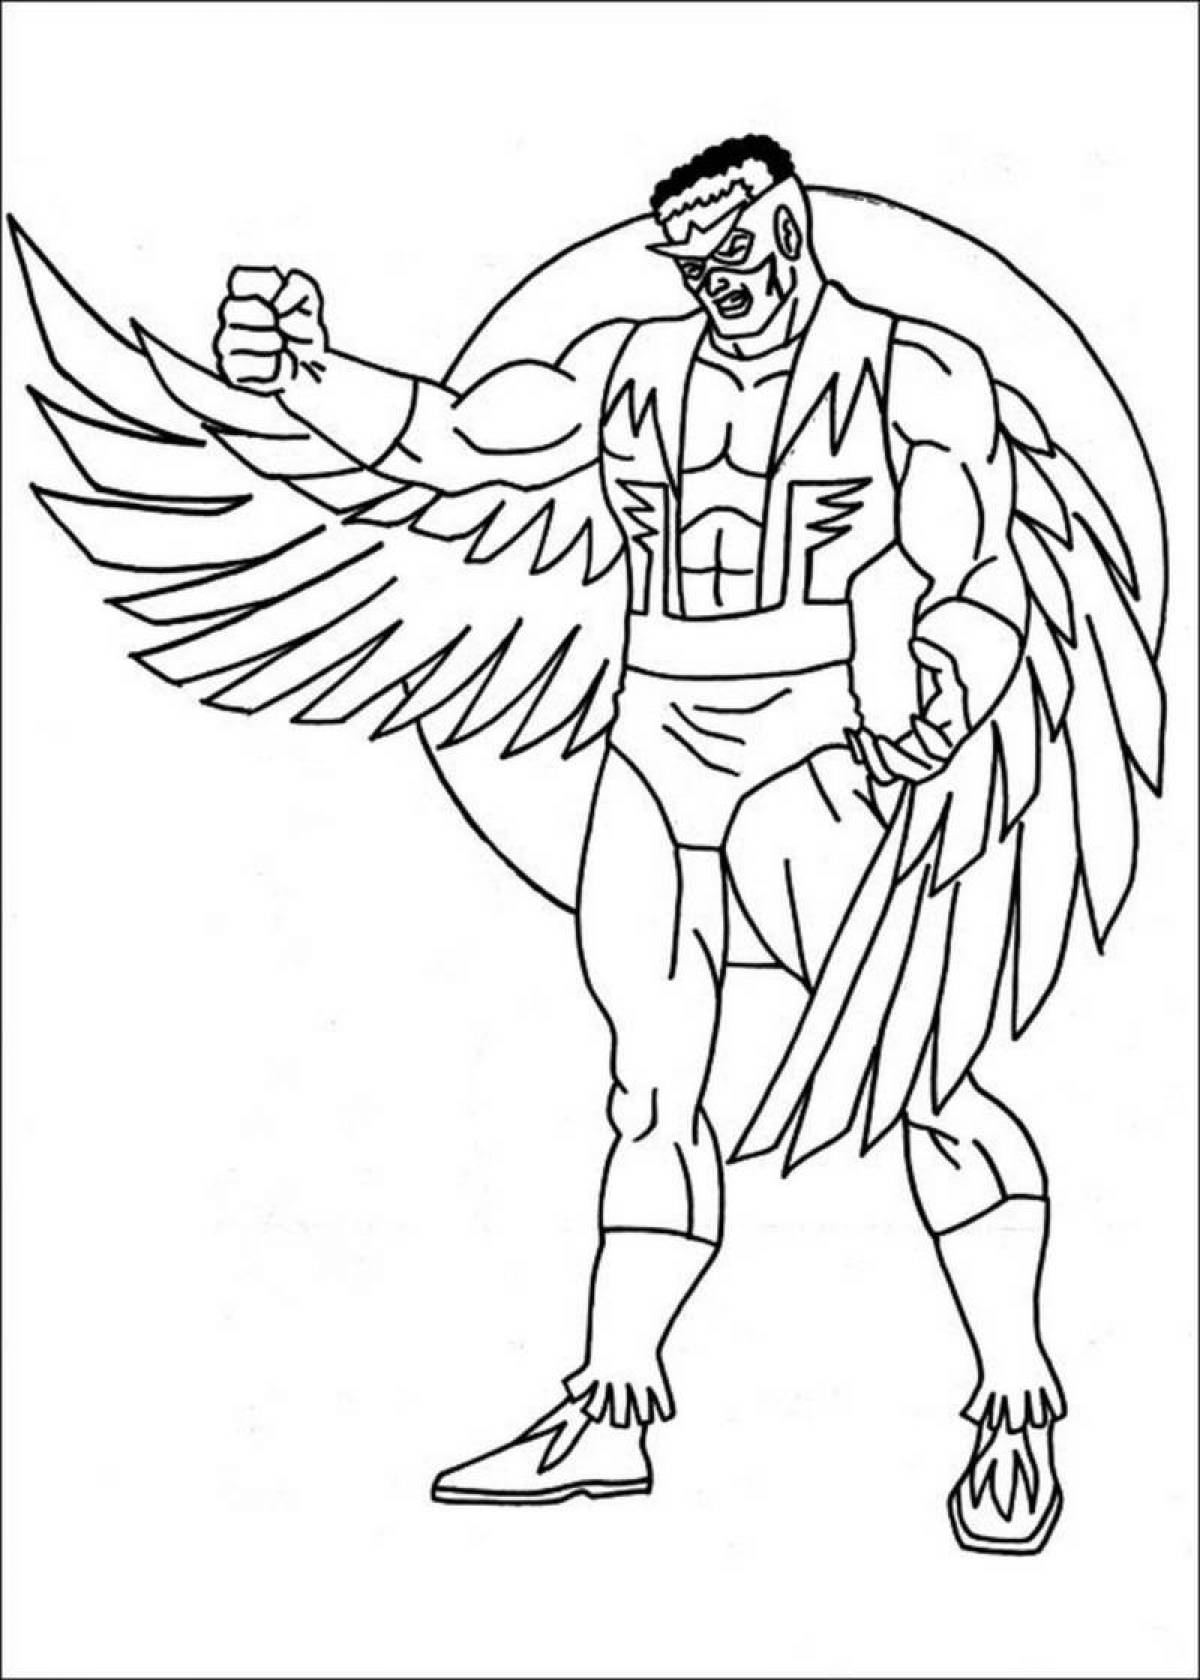 Energetic heroes coloring page